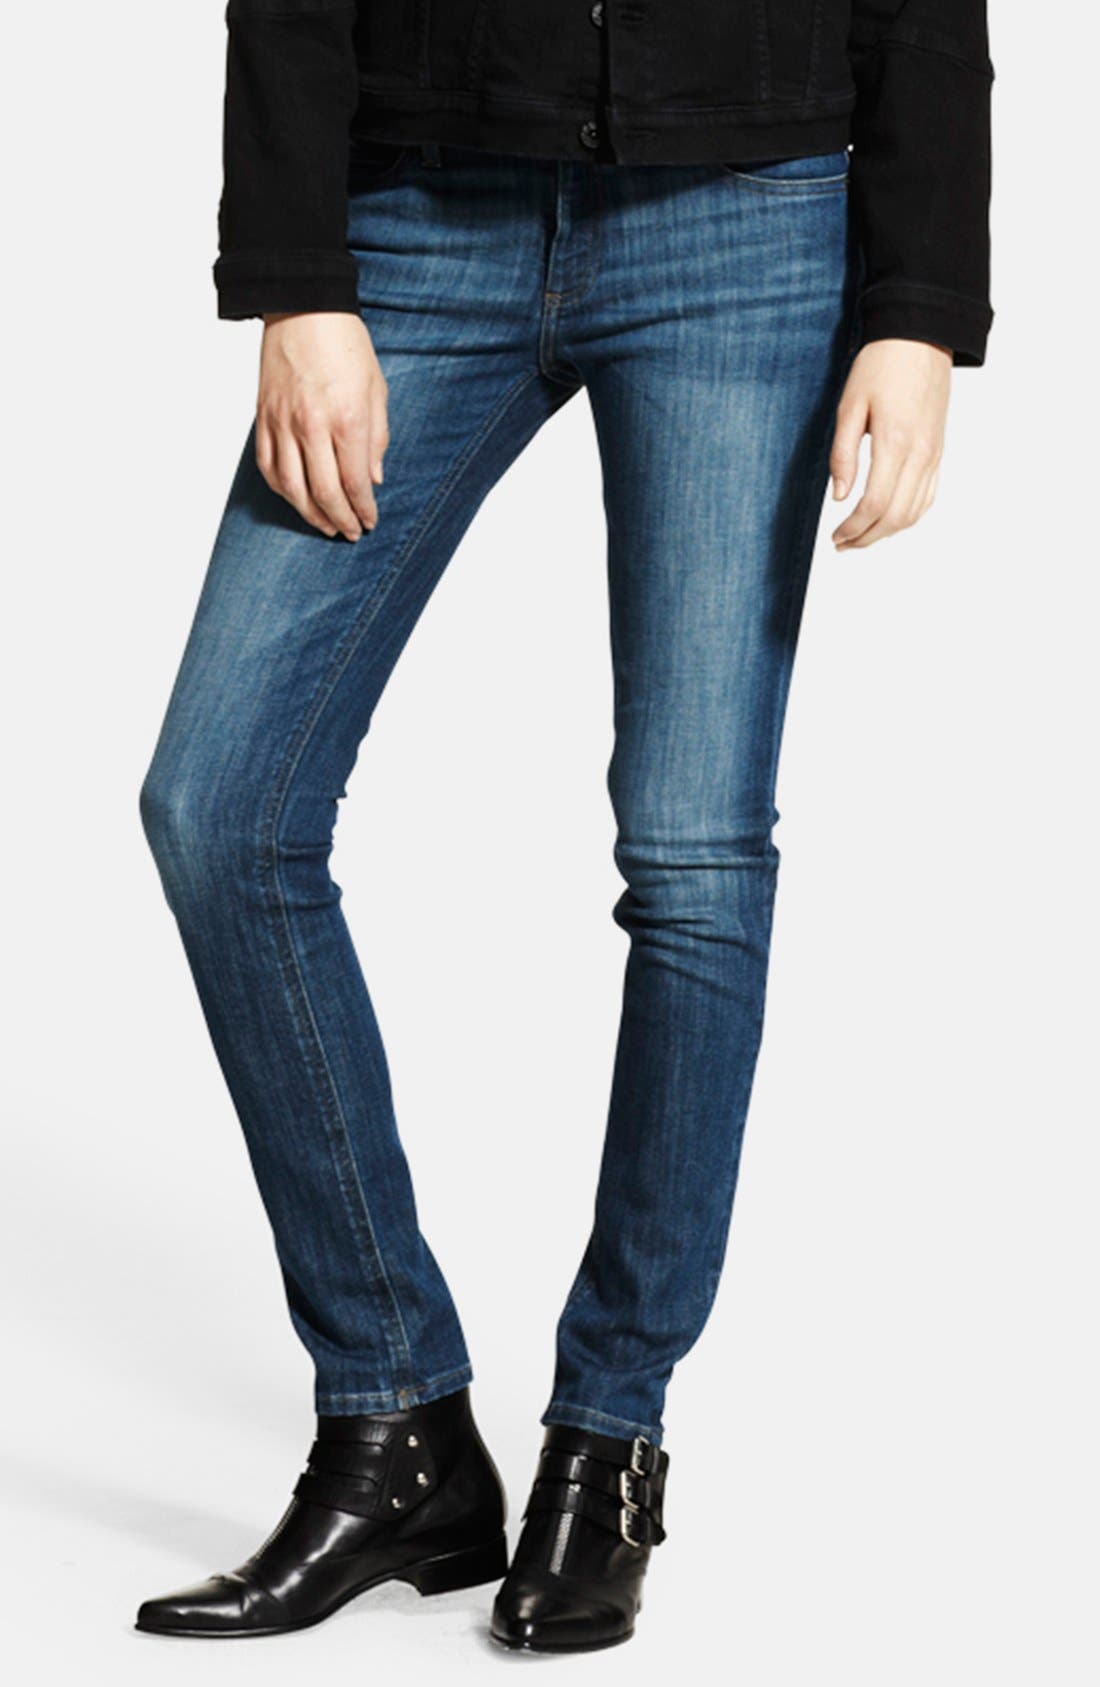 dl jeans nordstrom rack